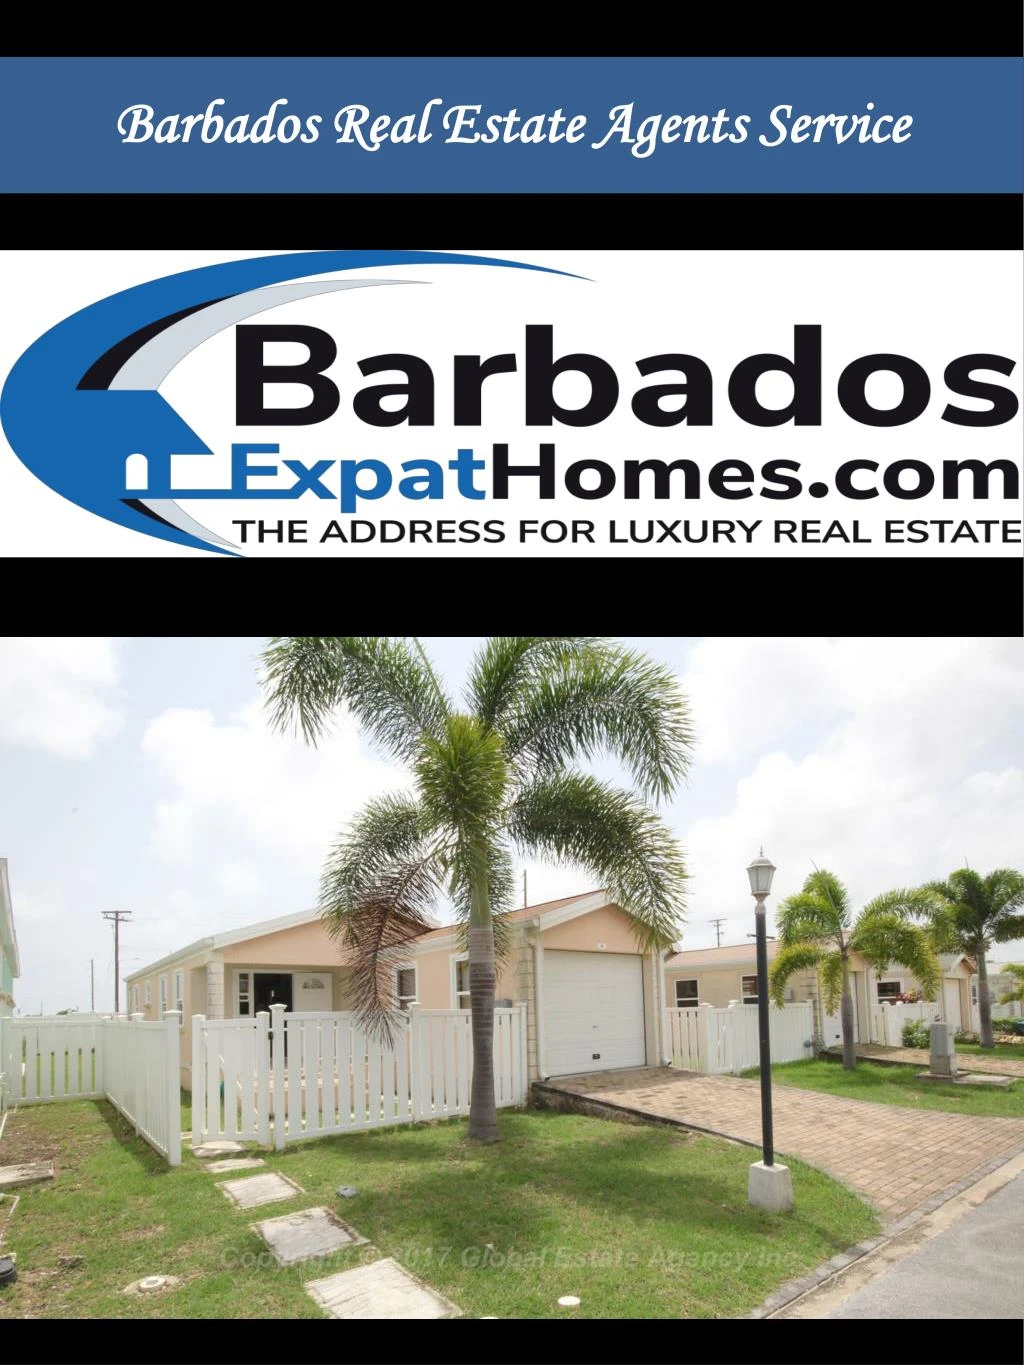 barbados real estate agents service